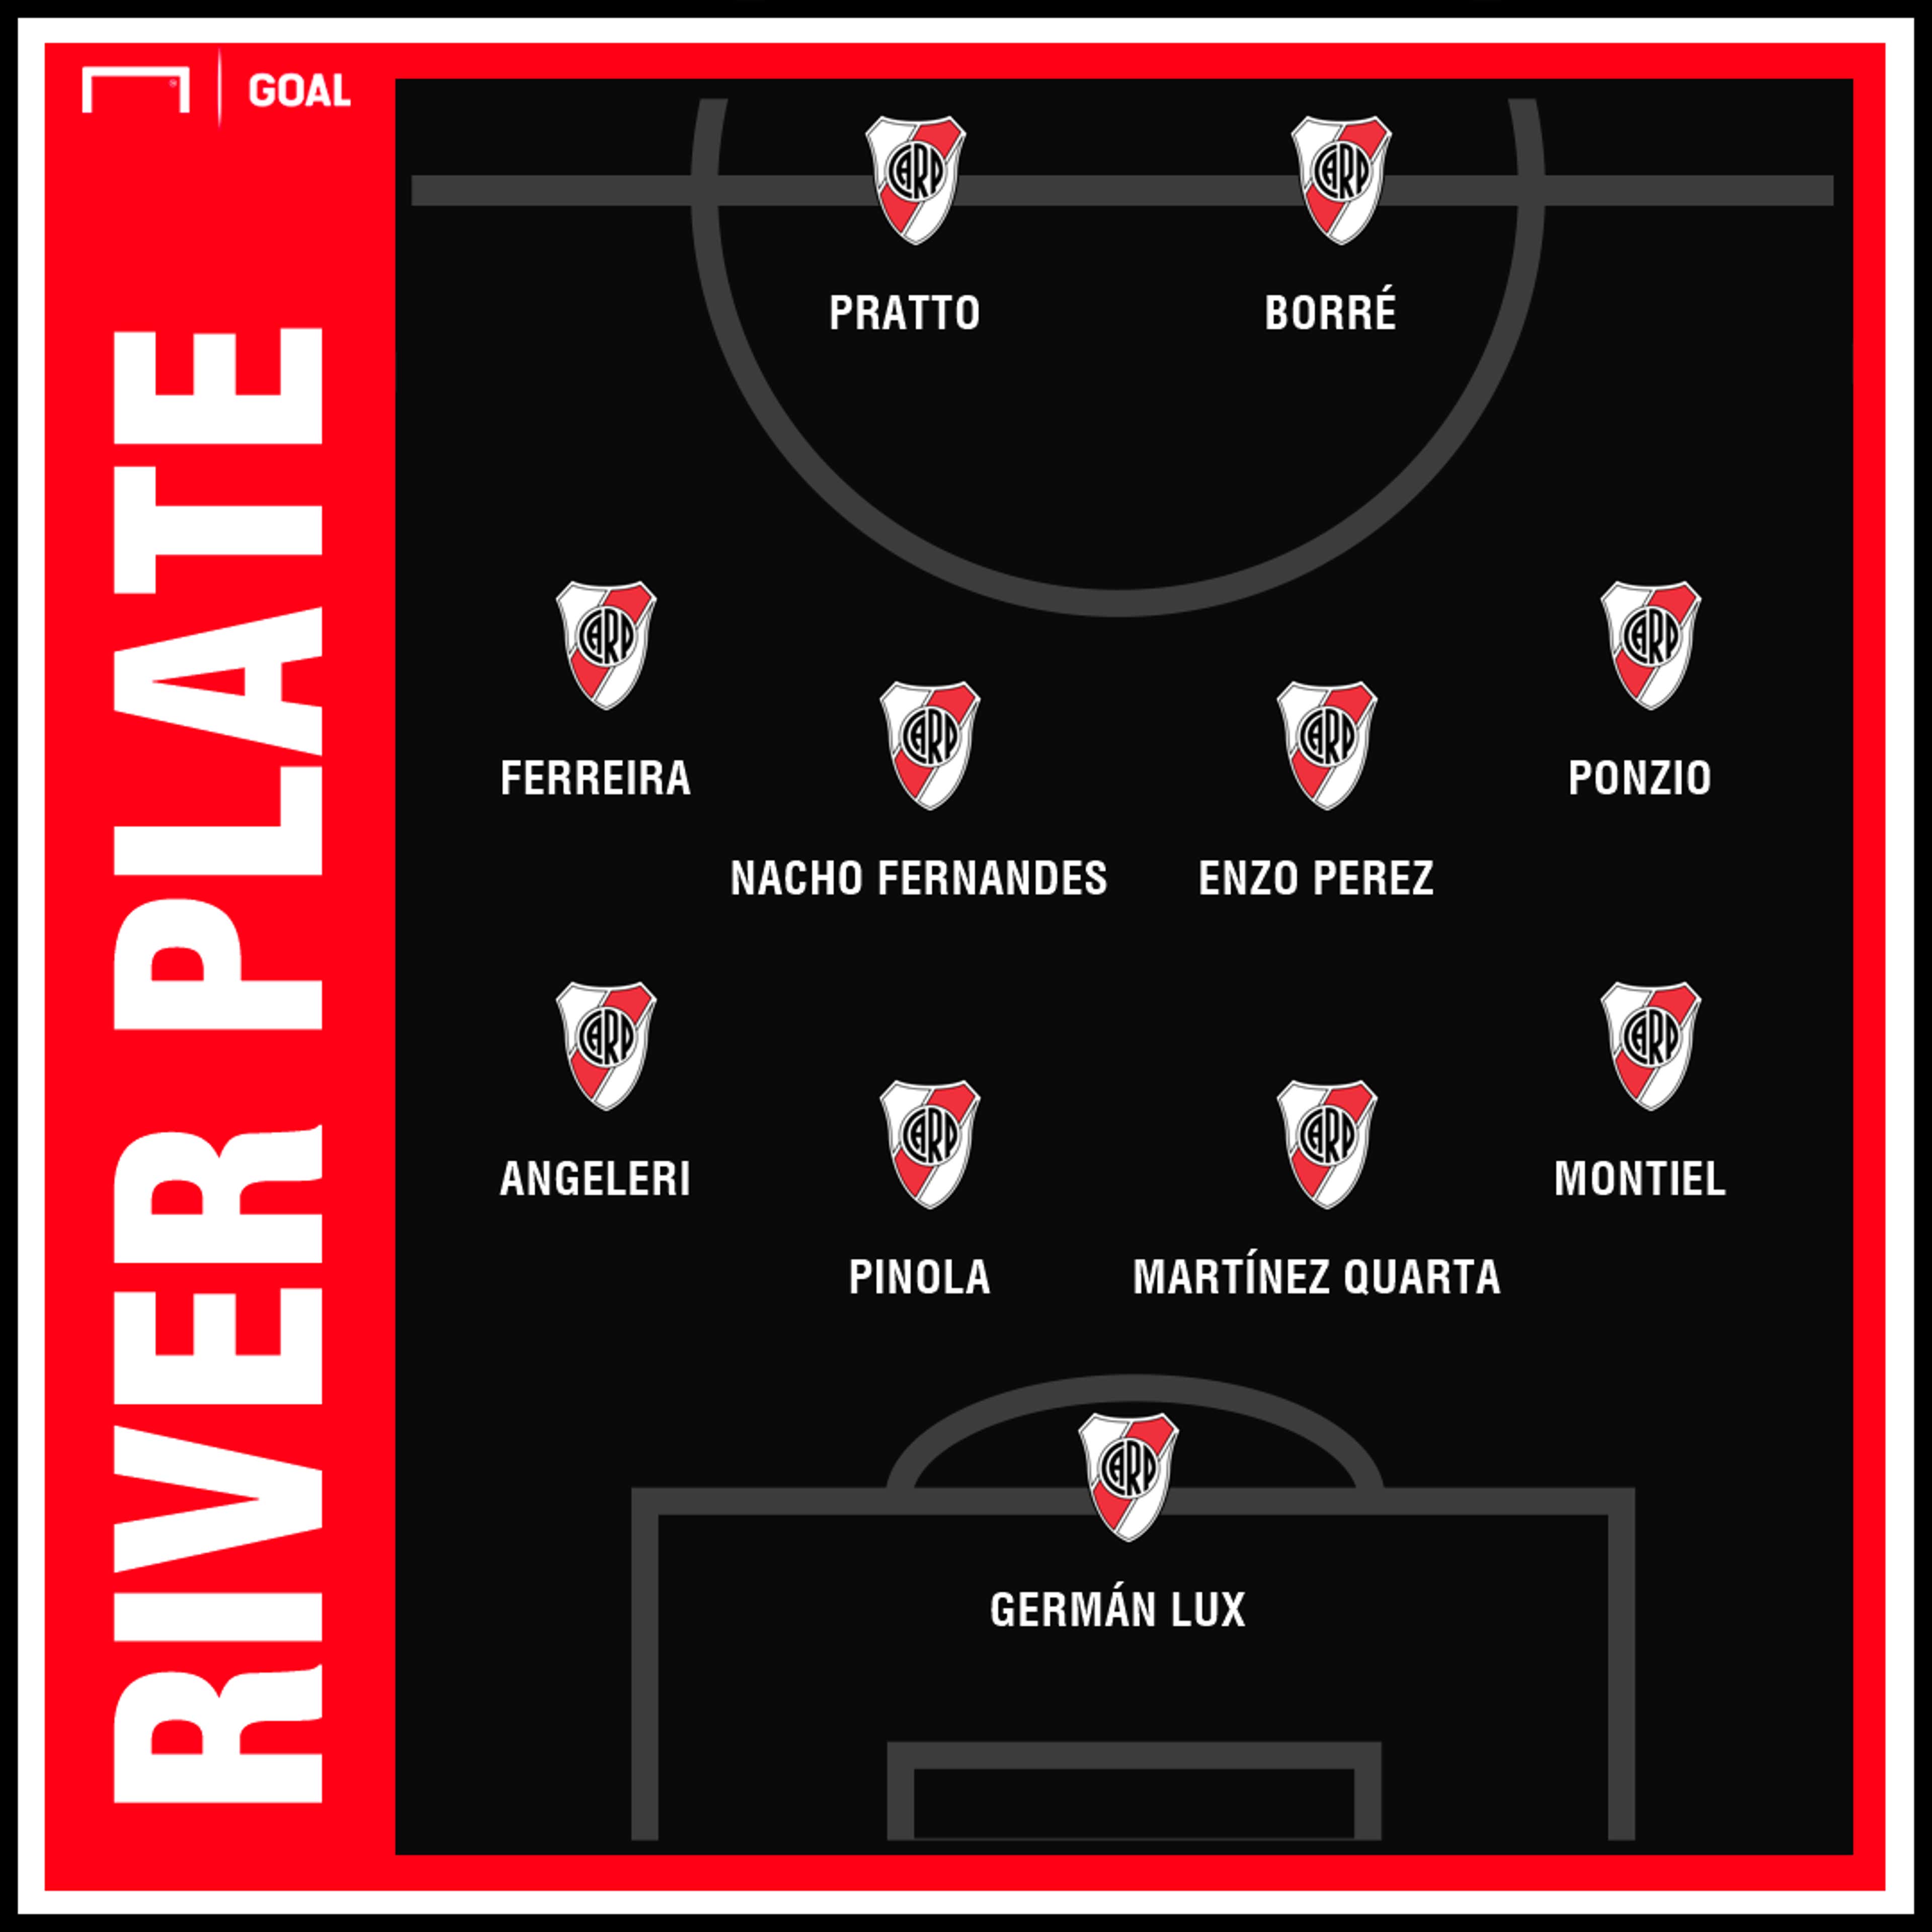 Internacional x River Plate ao vivo: onde assistir ao jogo da